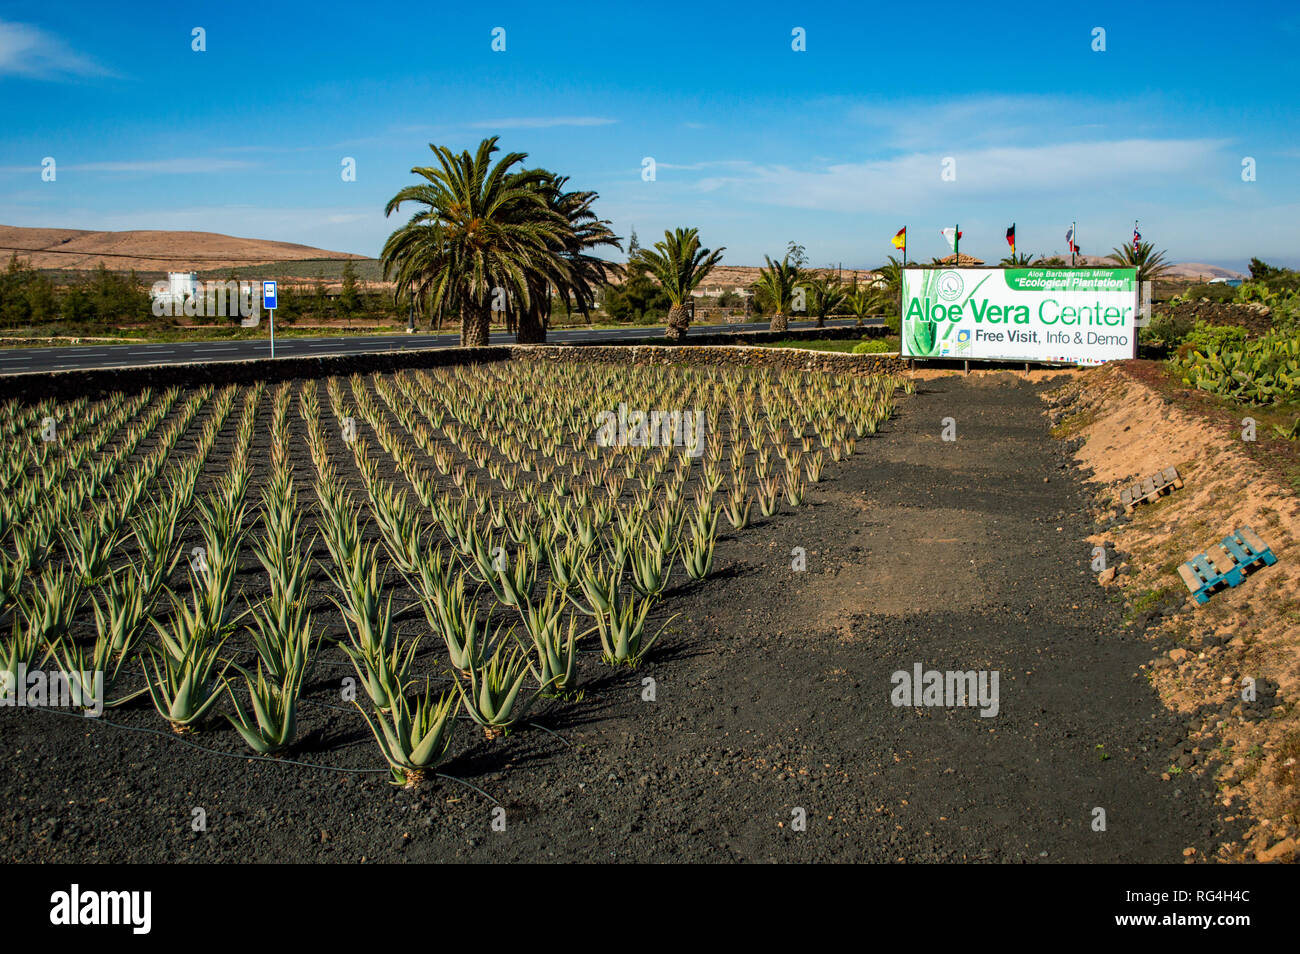 The Finca Canarias Aloe Vera Garden Center in Fuerteventura, Canary Islands  Stock Photo - Alamy